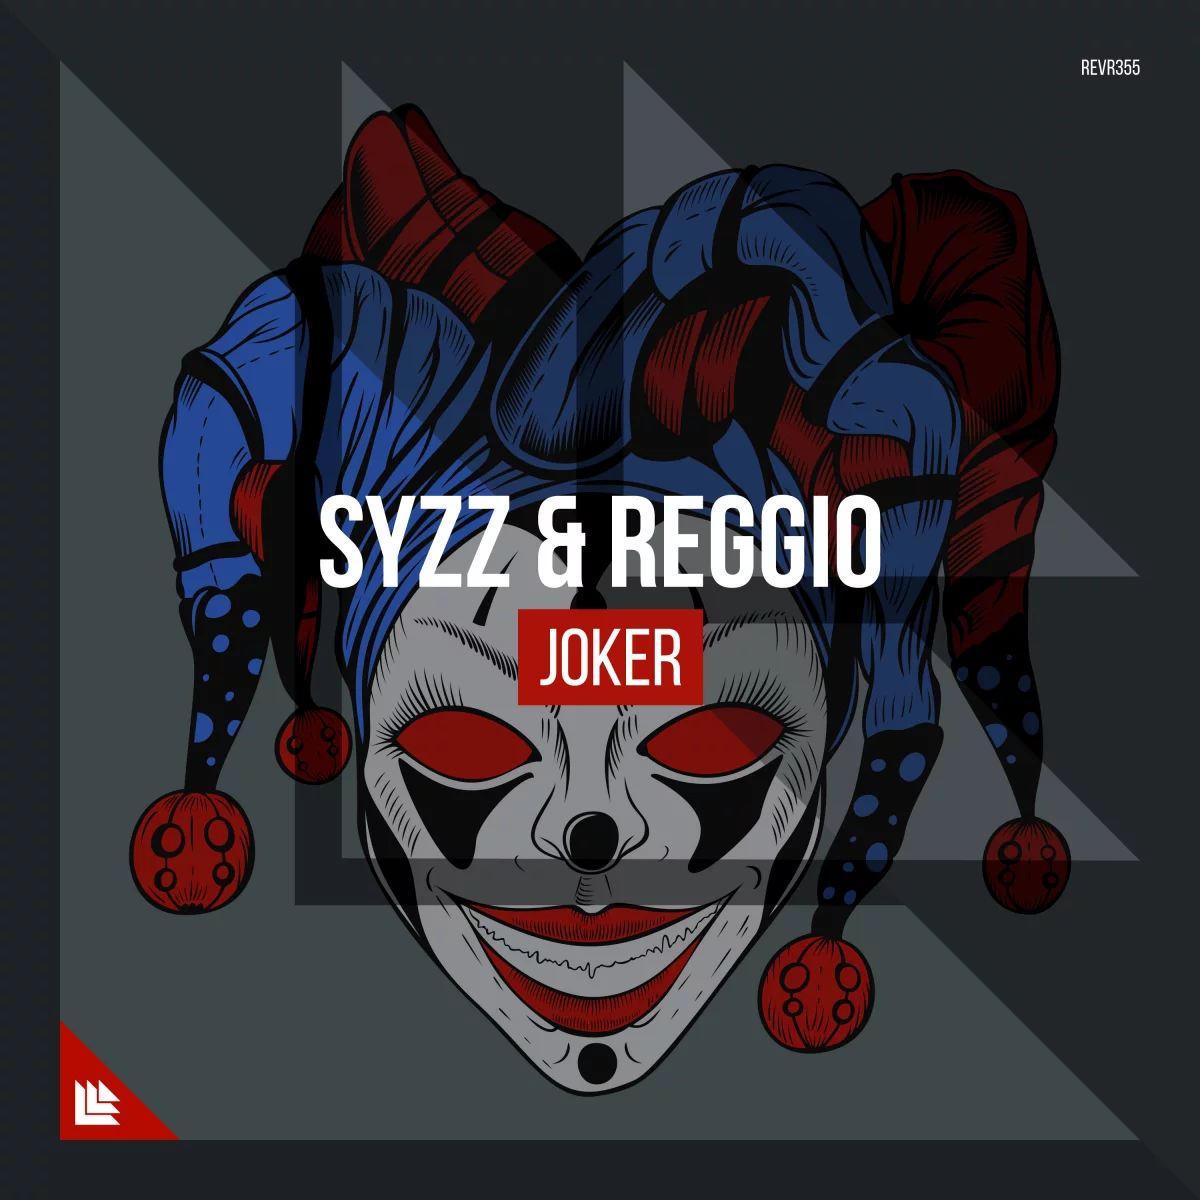 Joker - Syzz⁠ & REGGIO⁠ 